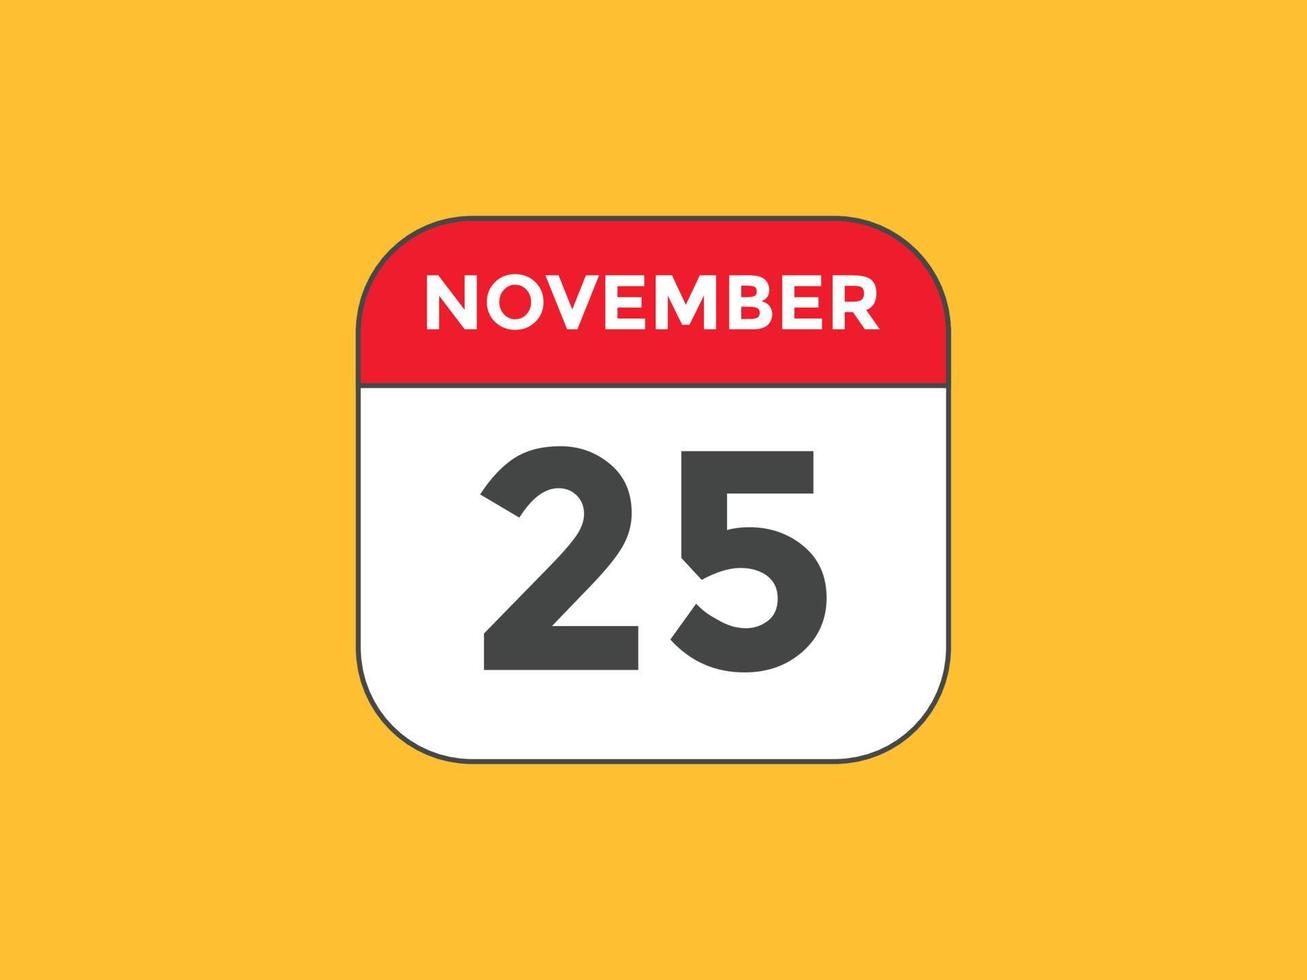 lembrete de calendário de 25 de novembro. Modelo de ícone de calendário diário de 25 de novembro. modelo de design de ícone de calendário 25 de novembro. ilustração vetorial vetor